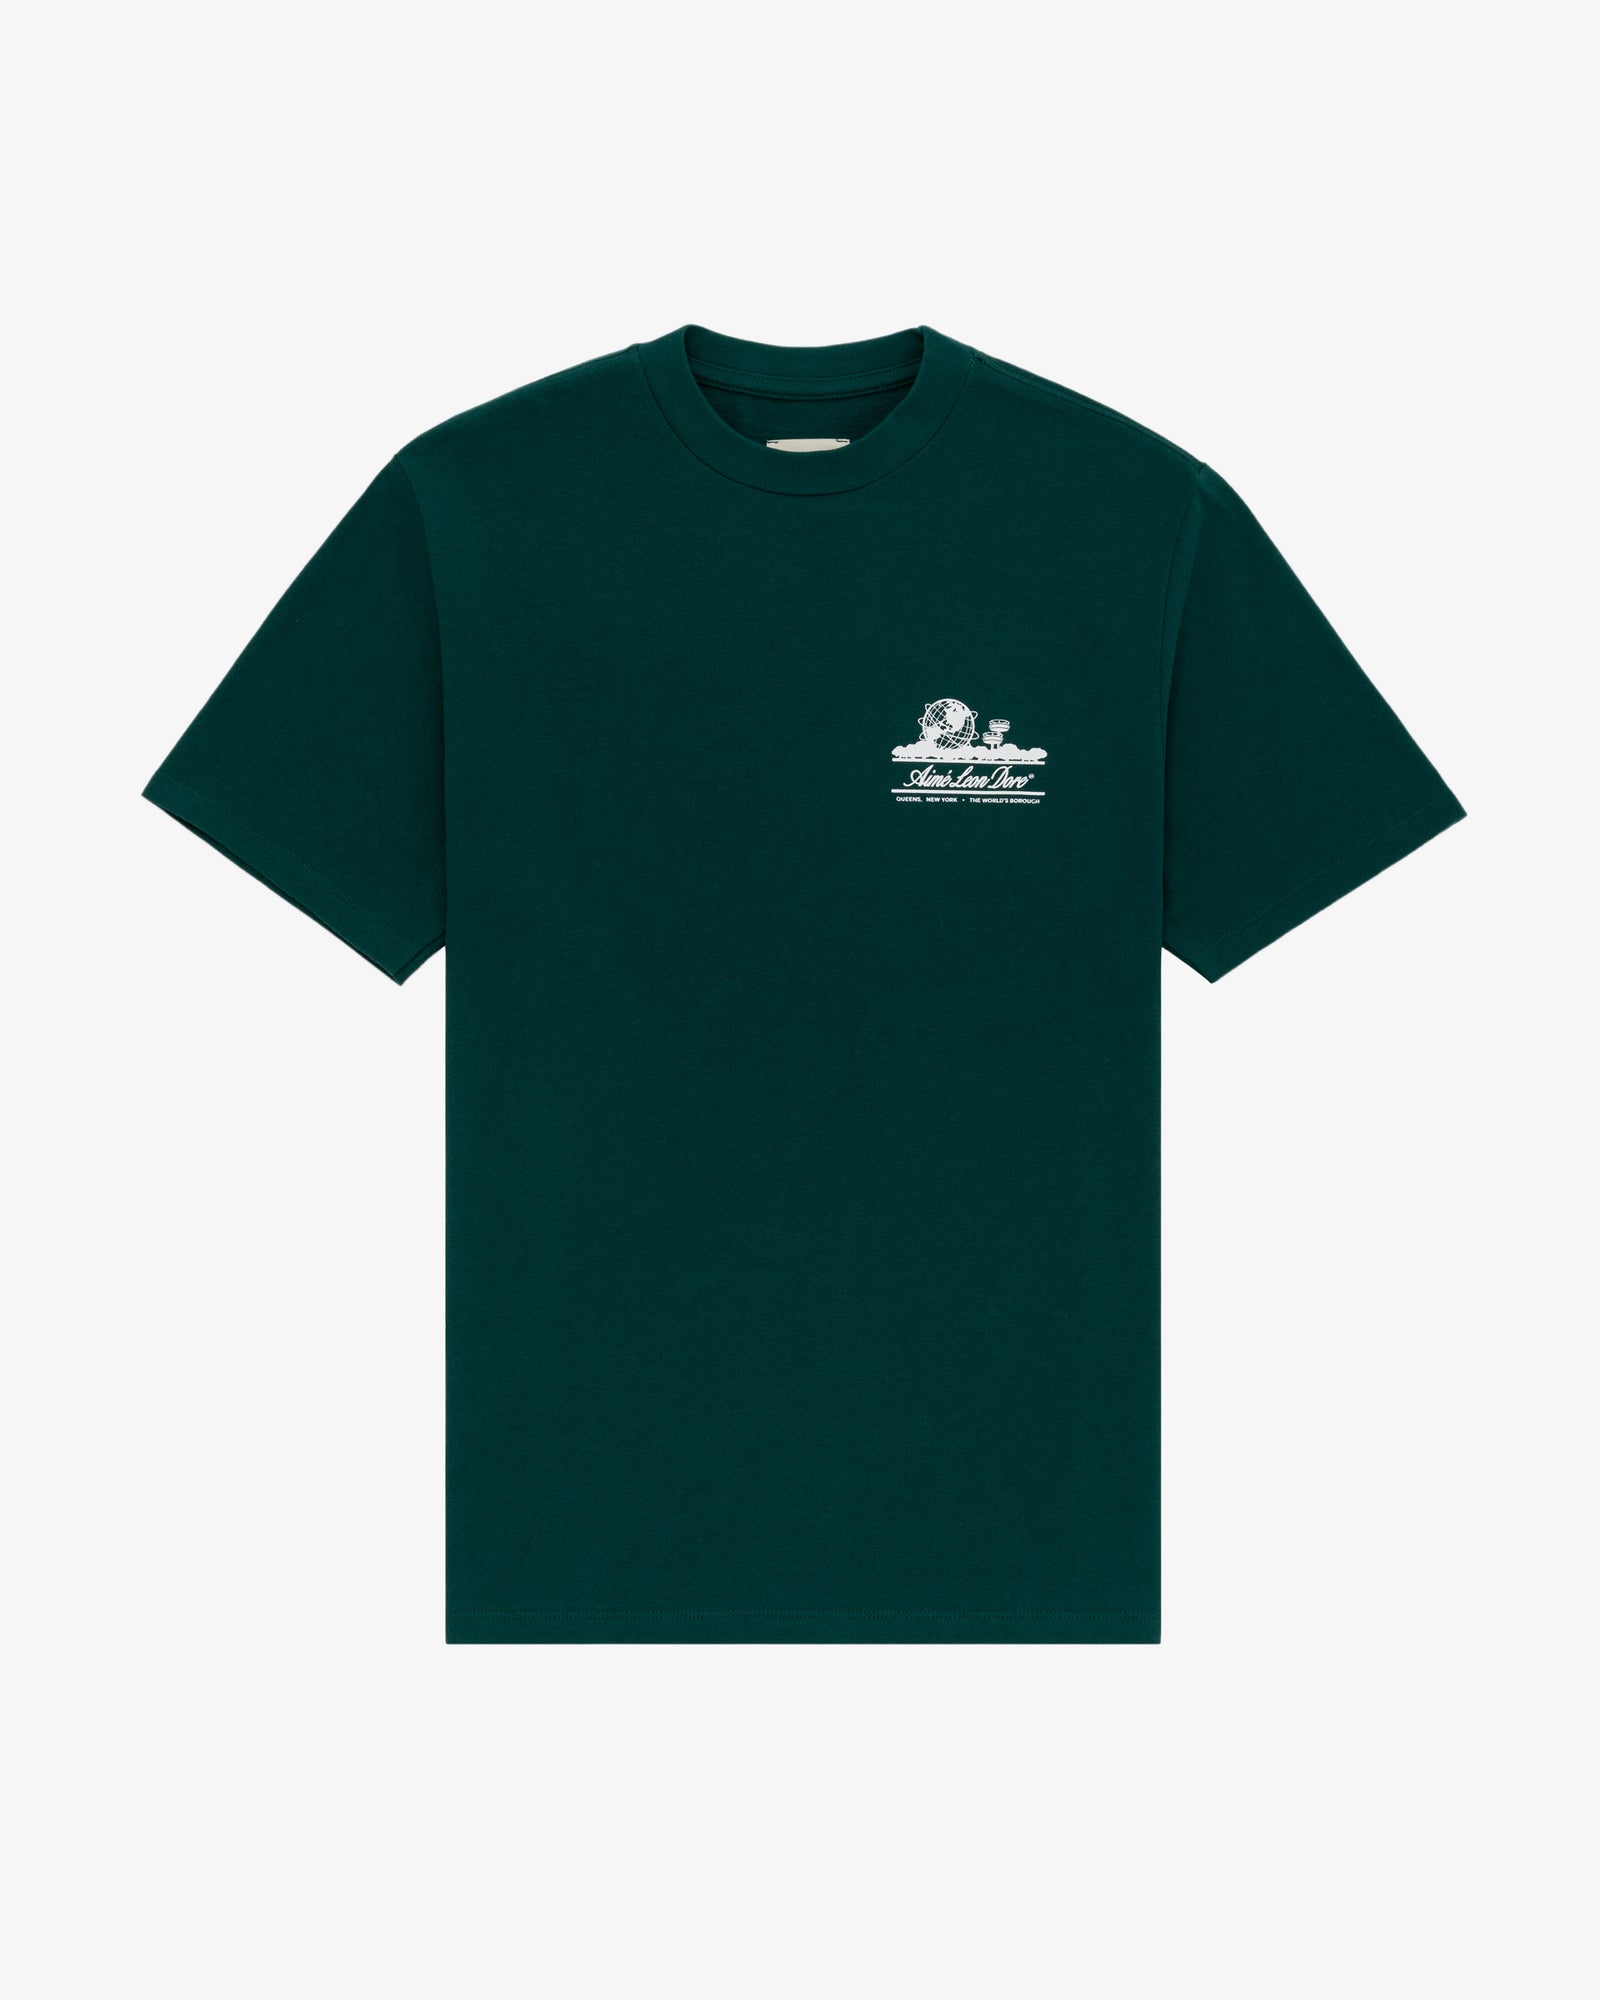 11,750円AIME LEON DORE Tシャツ GREEN UNISPHERE XL